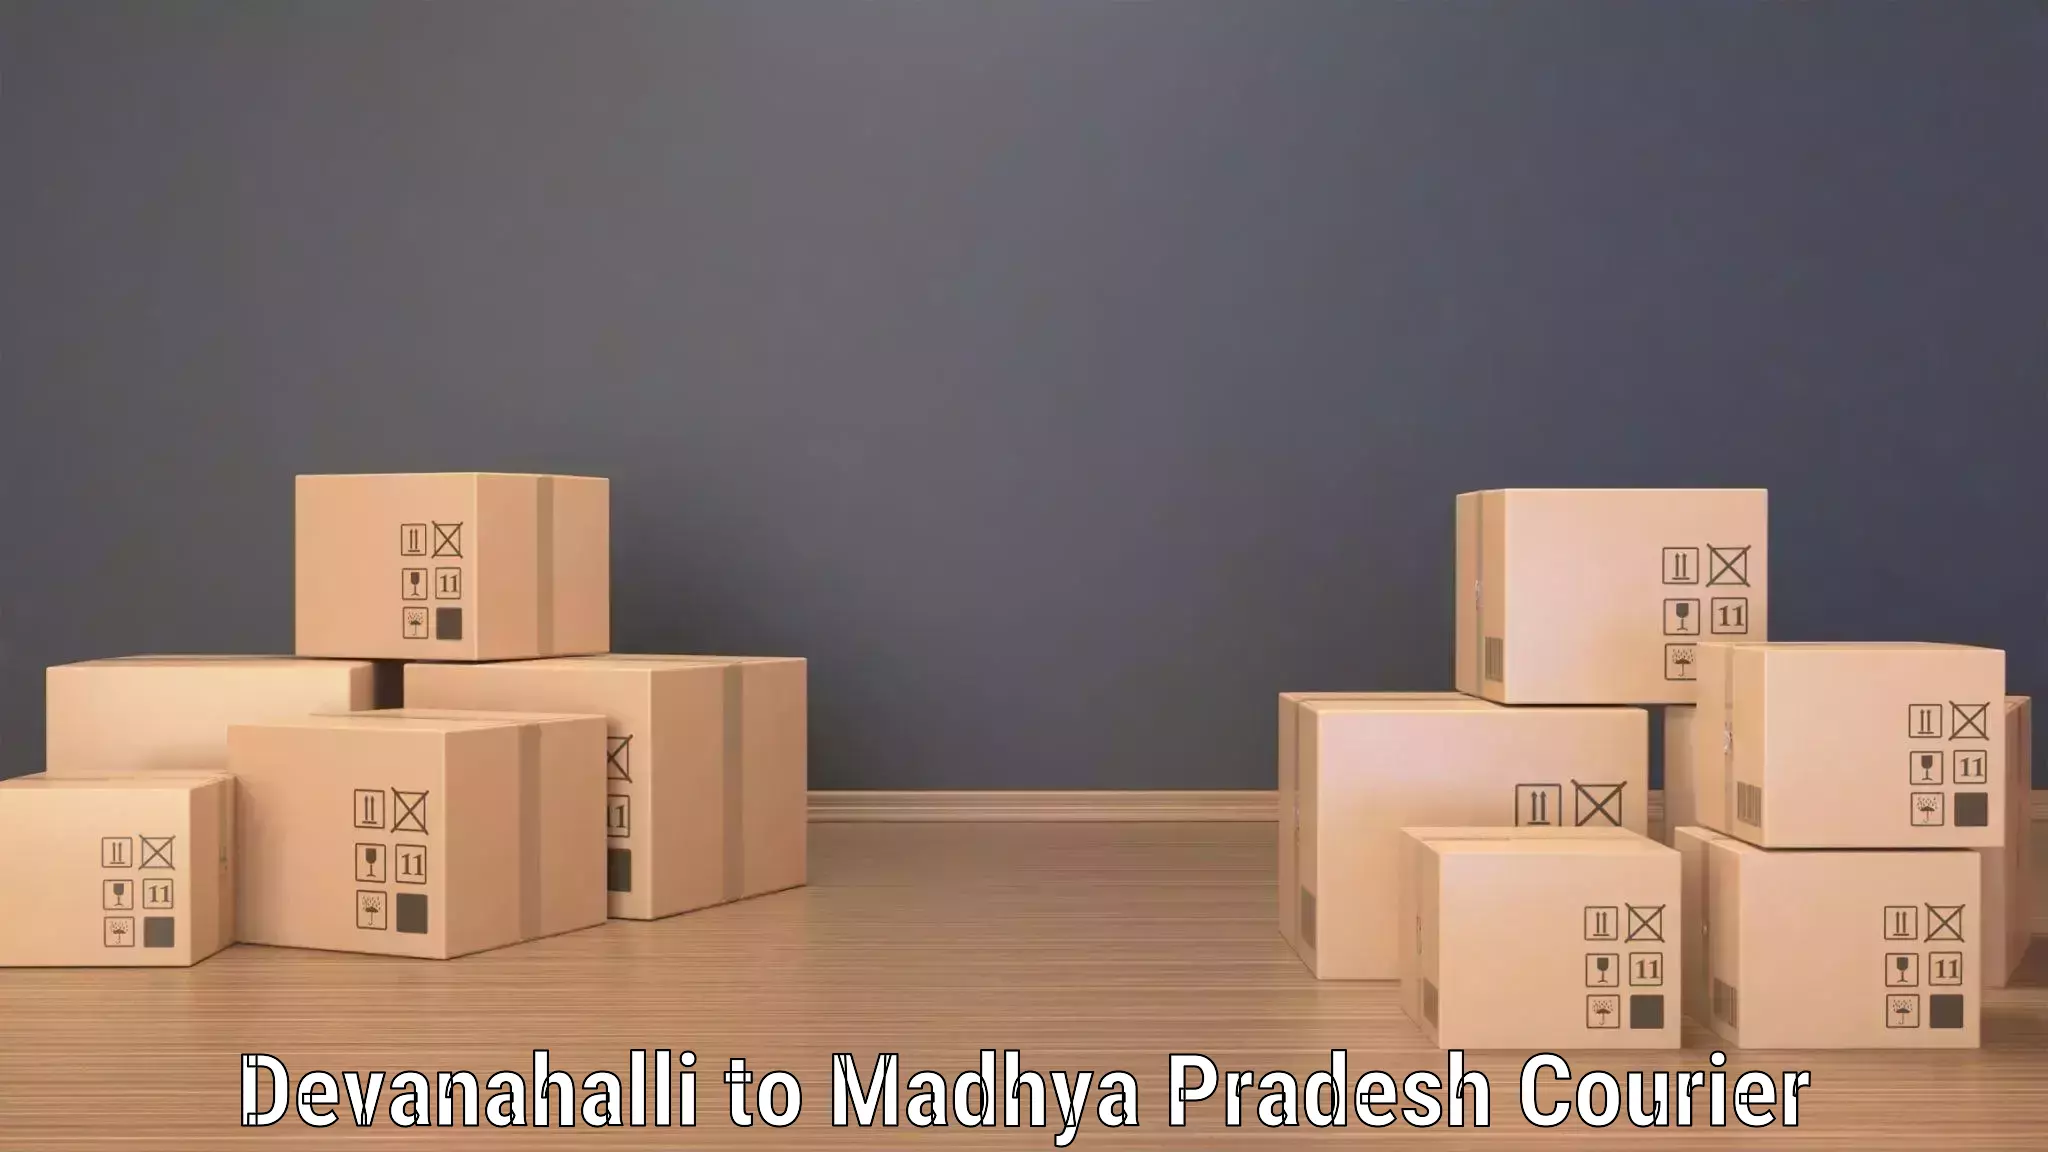 Efficient cargo services Devanahalli to Mundi